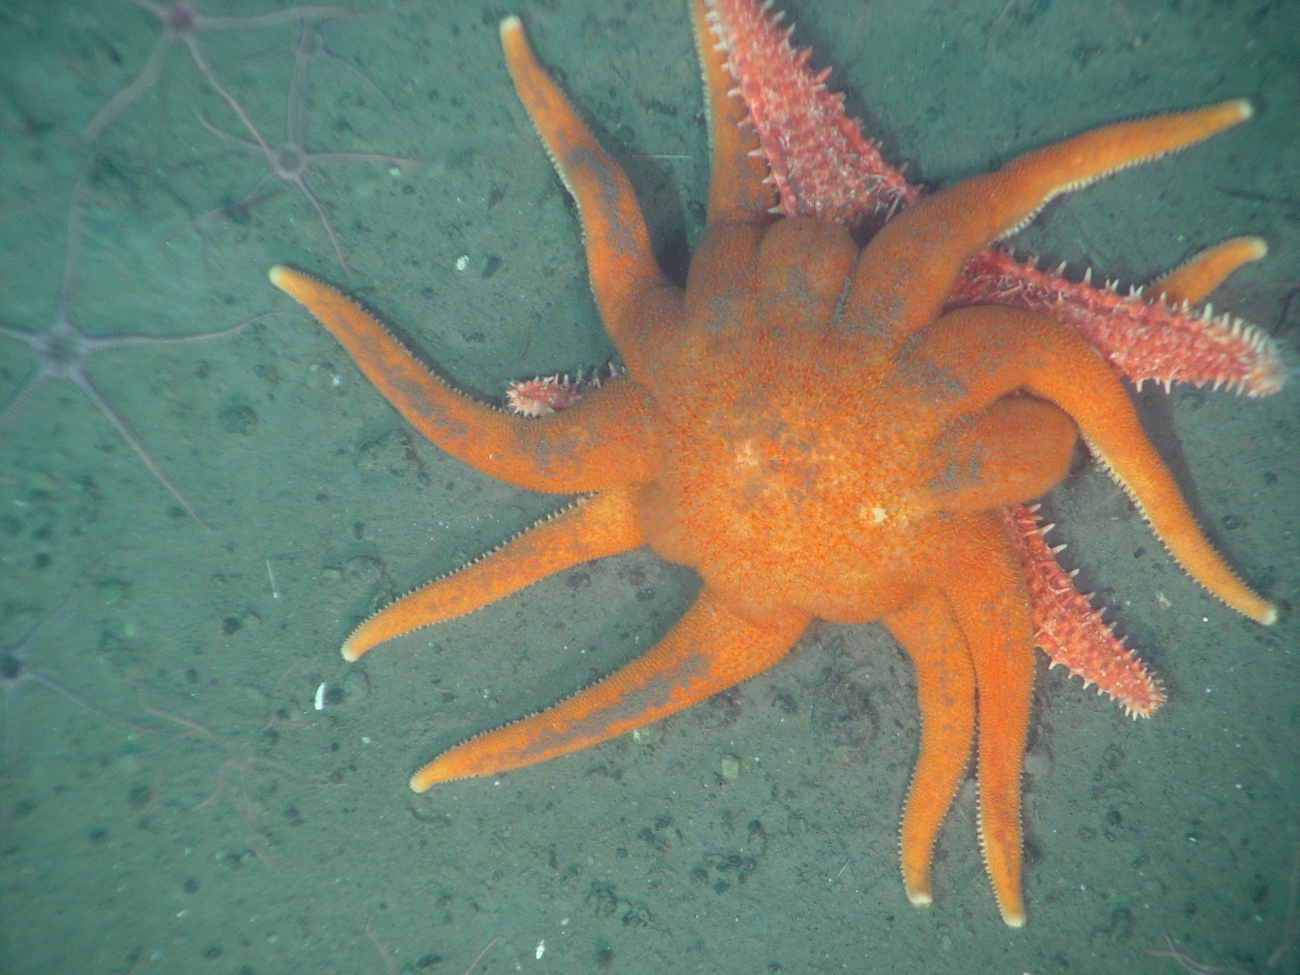 The sun star Solaster dawsoni attacking the spiny red sea starHippasteria spinosa